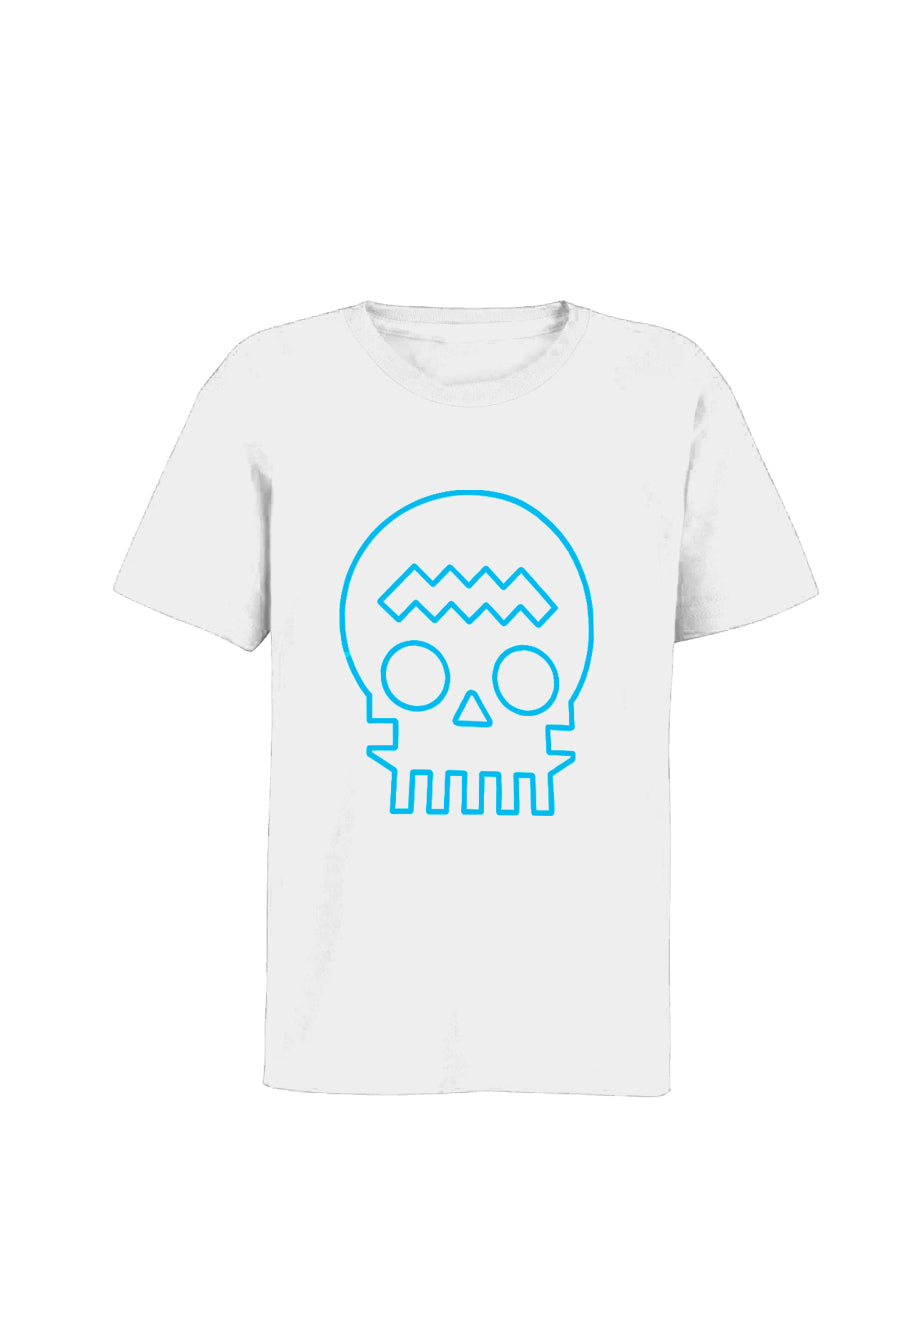 White unisex ZⓈONAMACO T-shirt with turquoise skull